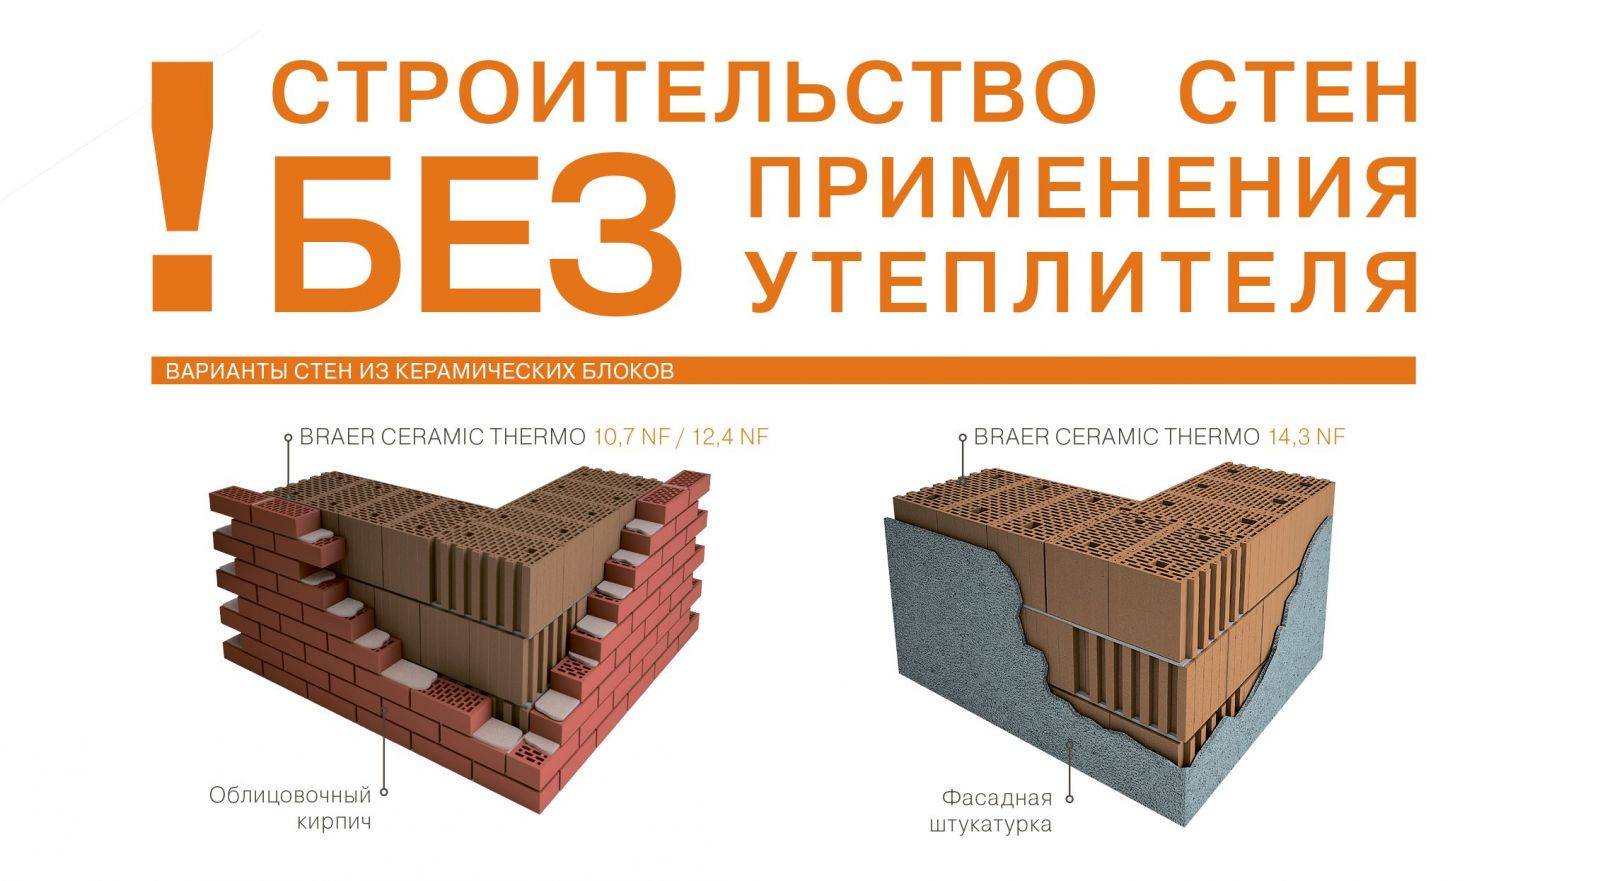 Описание и характеристики керамических блоков браер